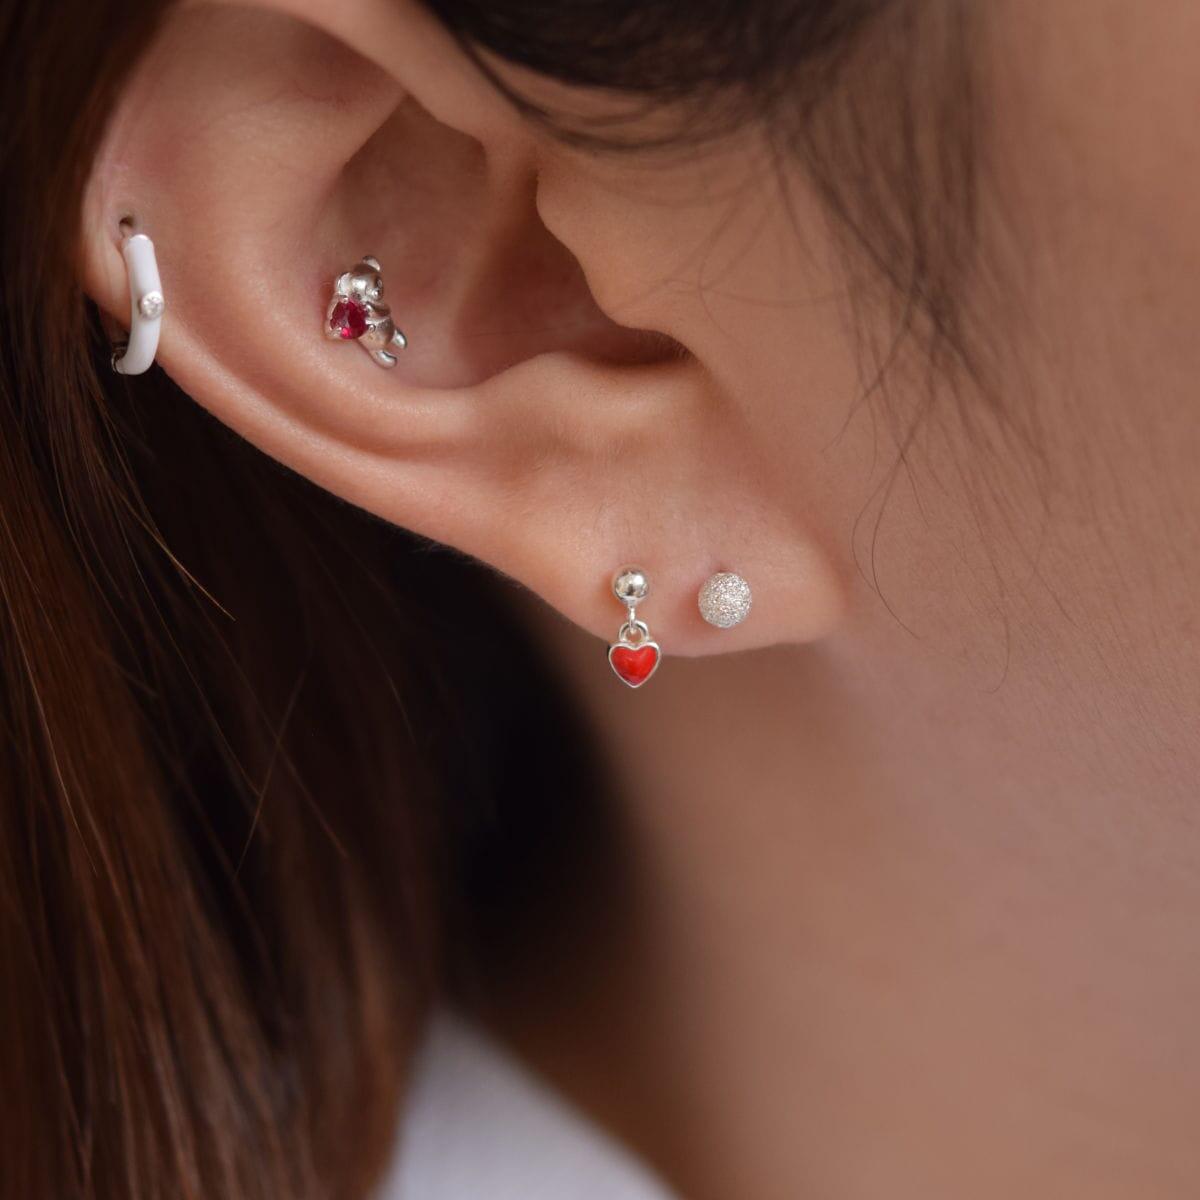 [925 Silver]ホワイトウィンターベアピアス[4セット] Earrings 10000won 